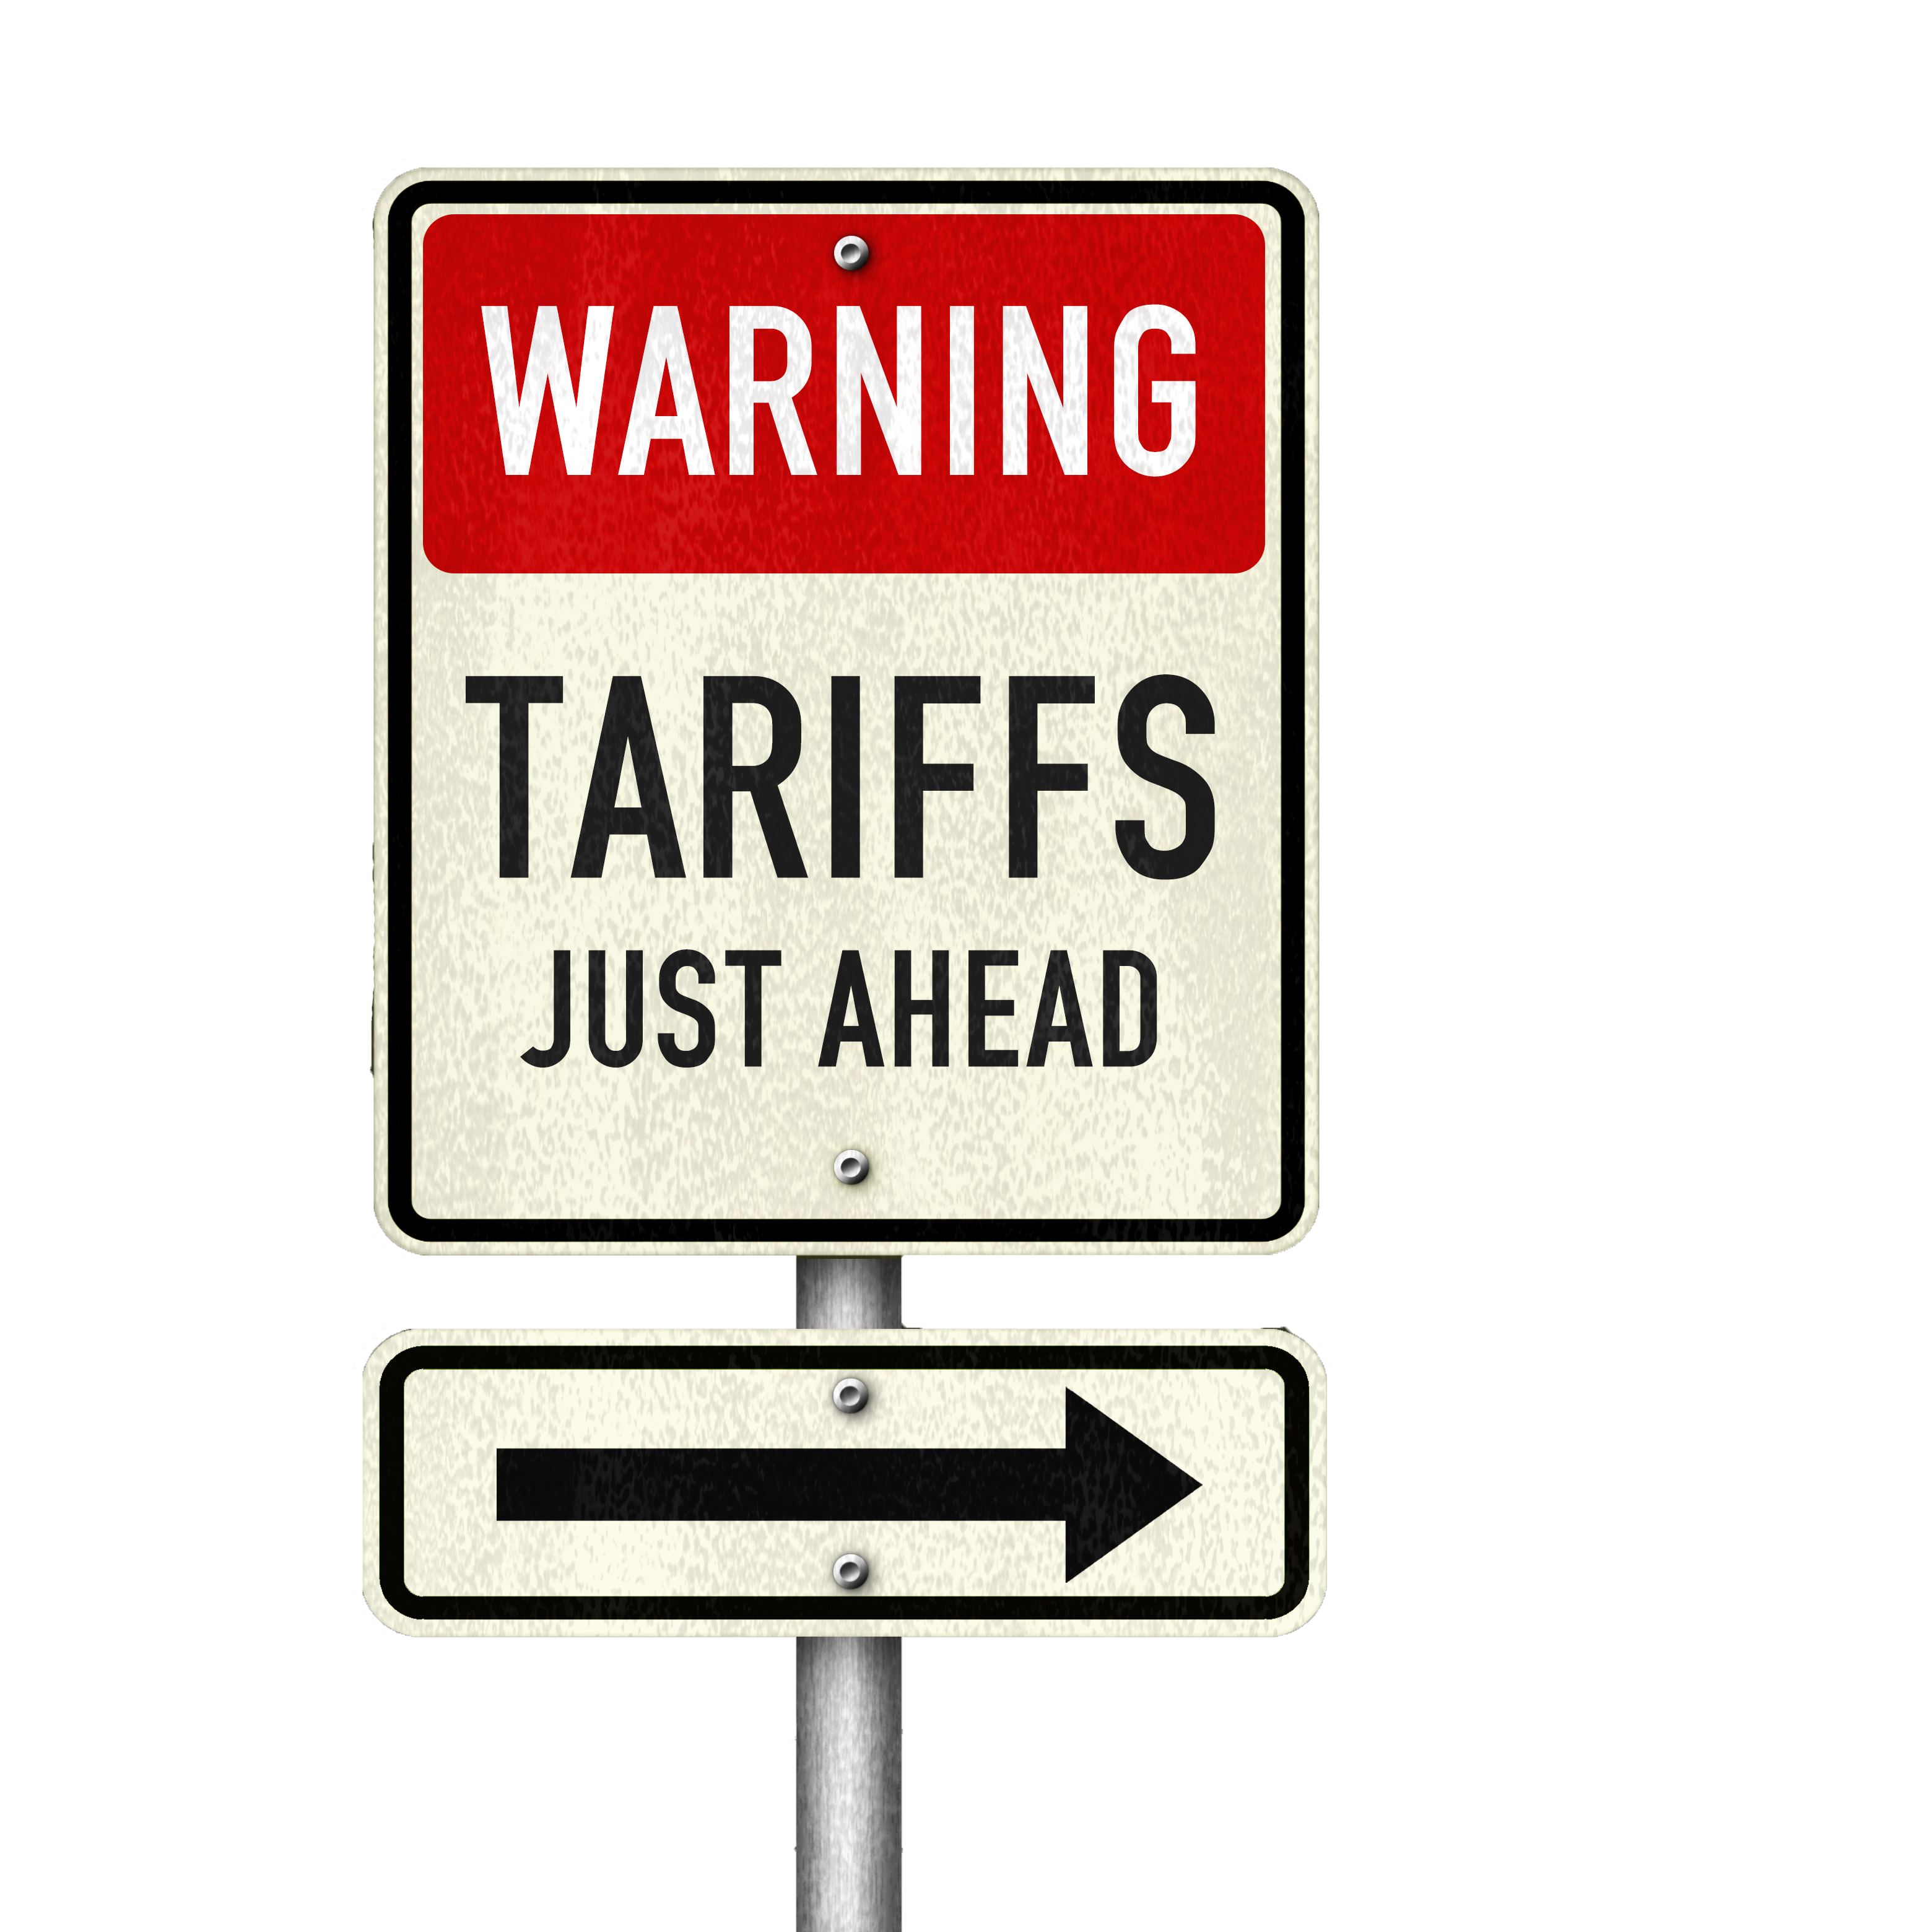 Warning: Tarrifs Ahead